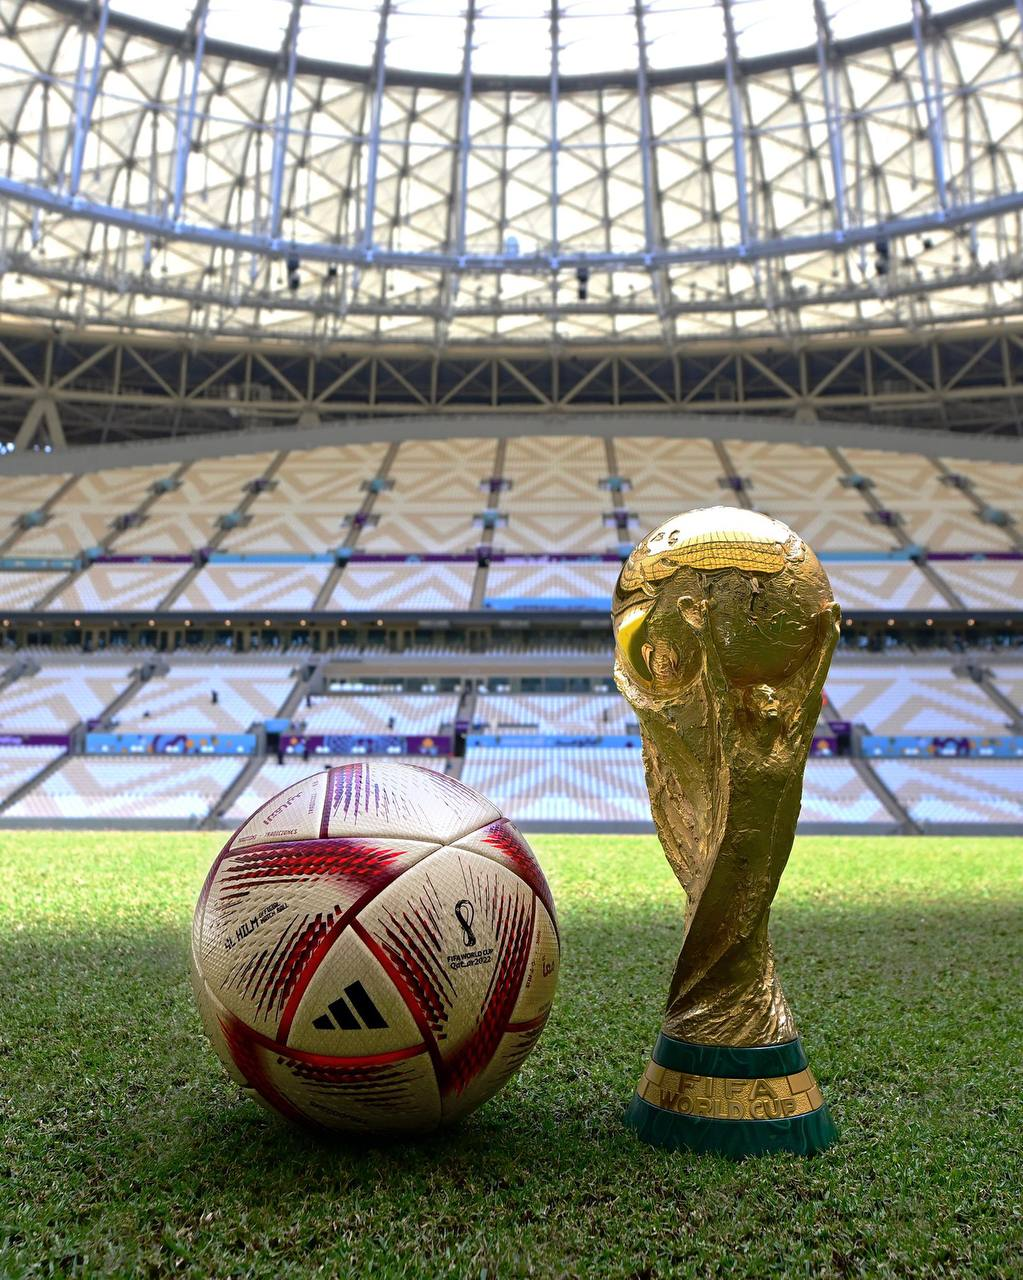 Чемпионат fifa. Qatar 2022 мяч. Qatar World Cup 2022 мяч. FIFA World Cup 2022 мяч. Мяч ЧМ 2022 В Катаре финал.